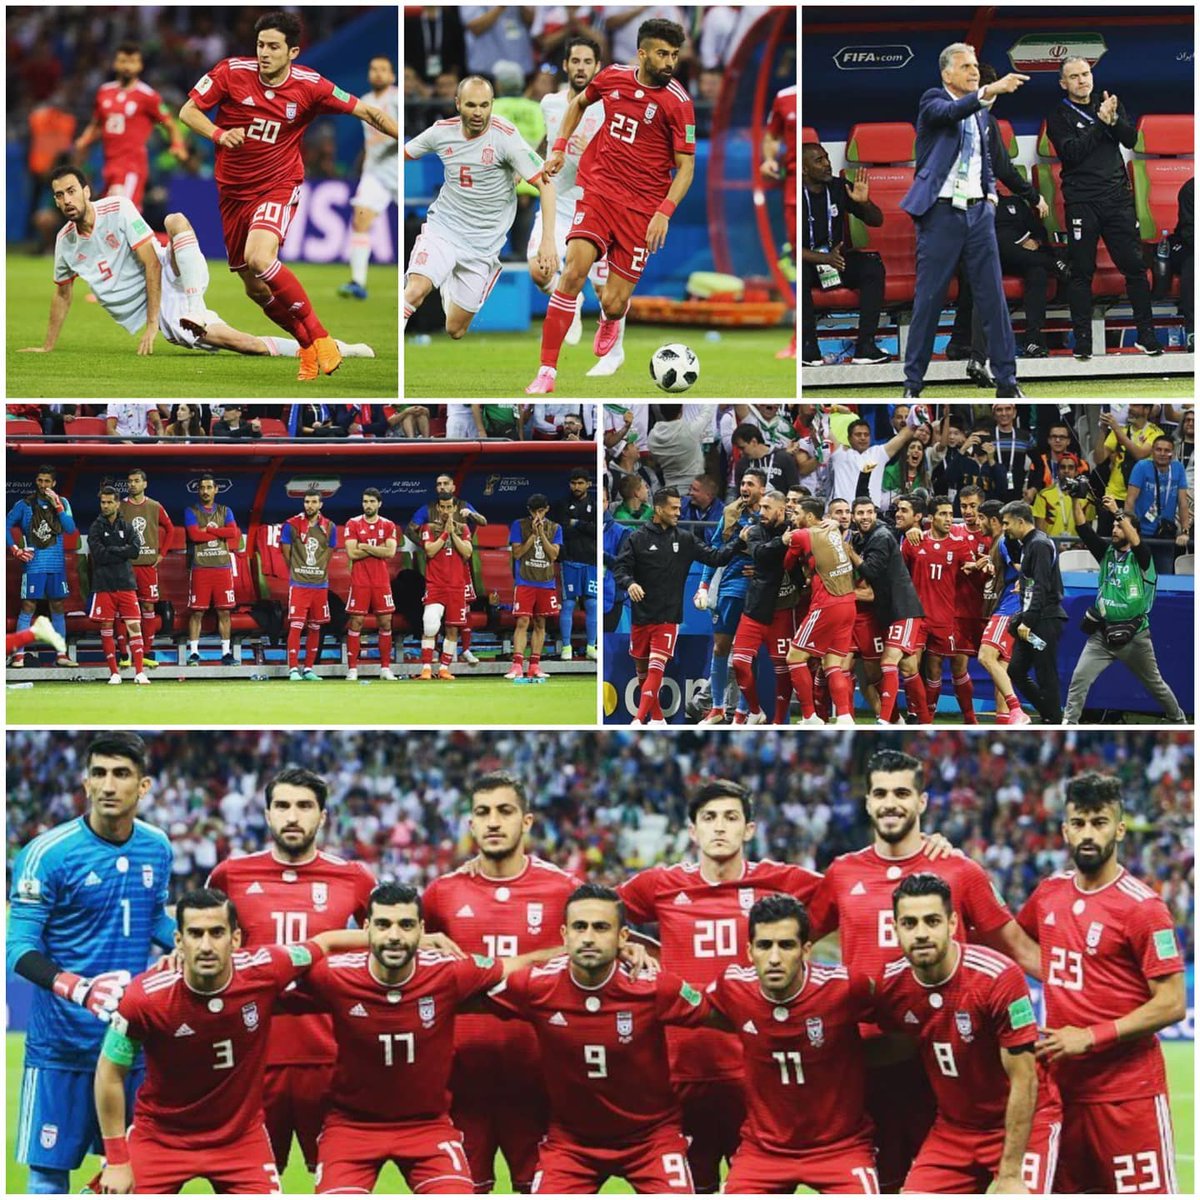 Il y a 2 ans jour pour jour en ce fameux 20 juin 2018, l'Iran 🇮🇷 a réalisé un excellent match face à la grande équipe d'Espagne 🇪🇦 au stade de la Kazan Arena Russie qui fini malheureusement sur une défaite de 0-1 en faveur de la Roja.

#IranFootball #TeamMelli #FIFAWorldCup2018